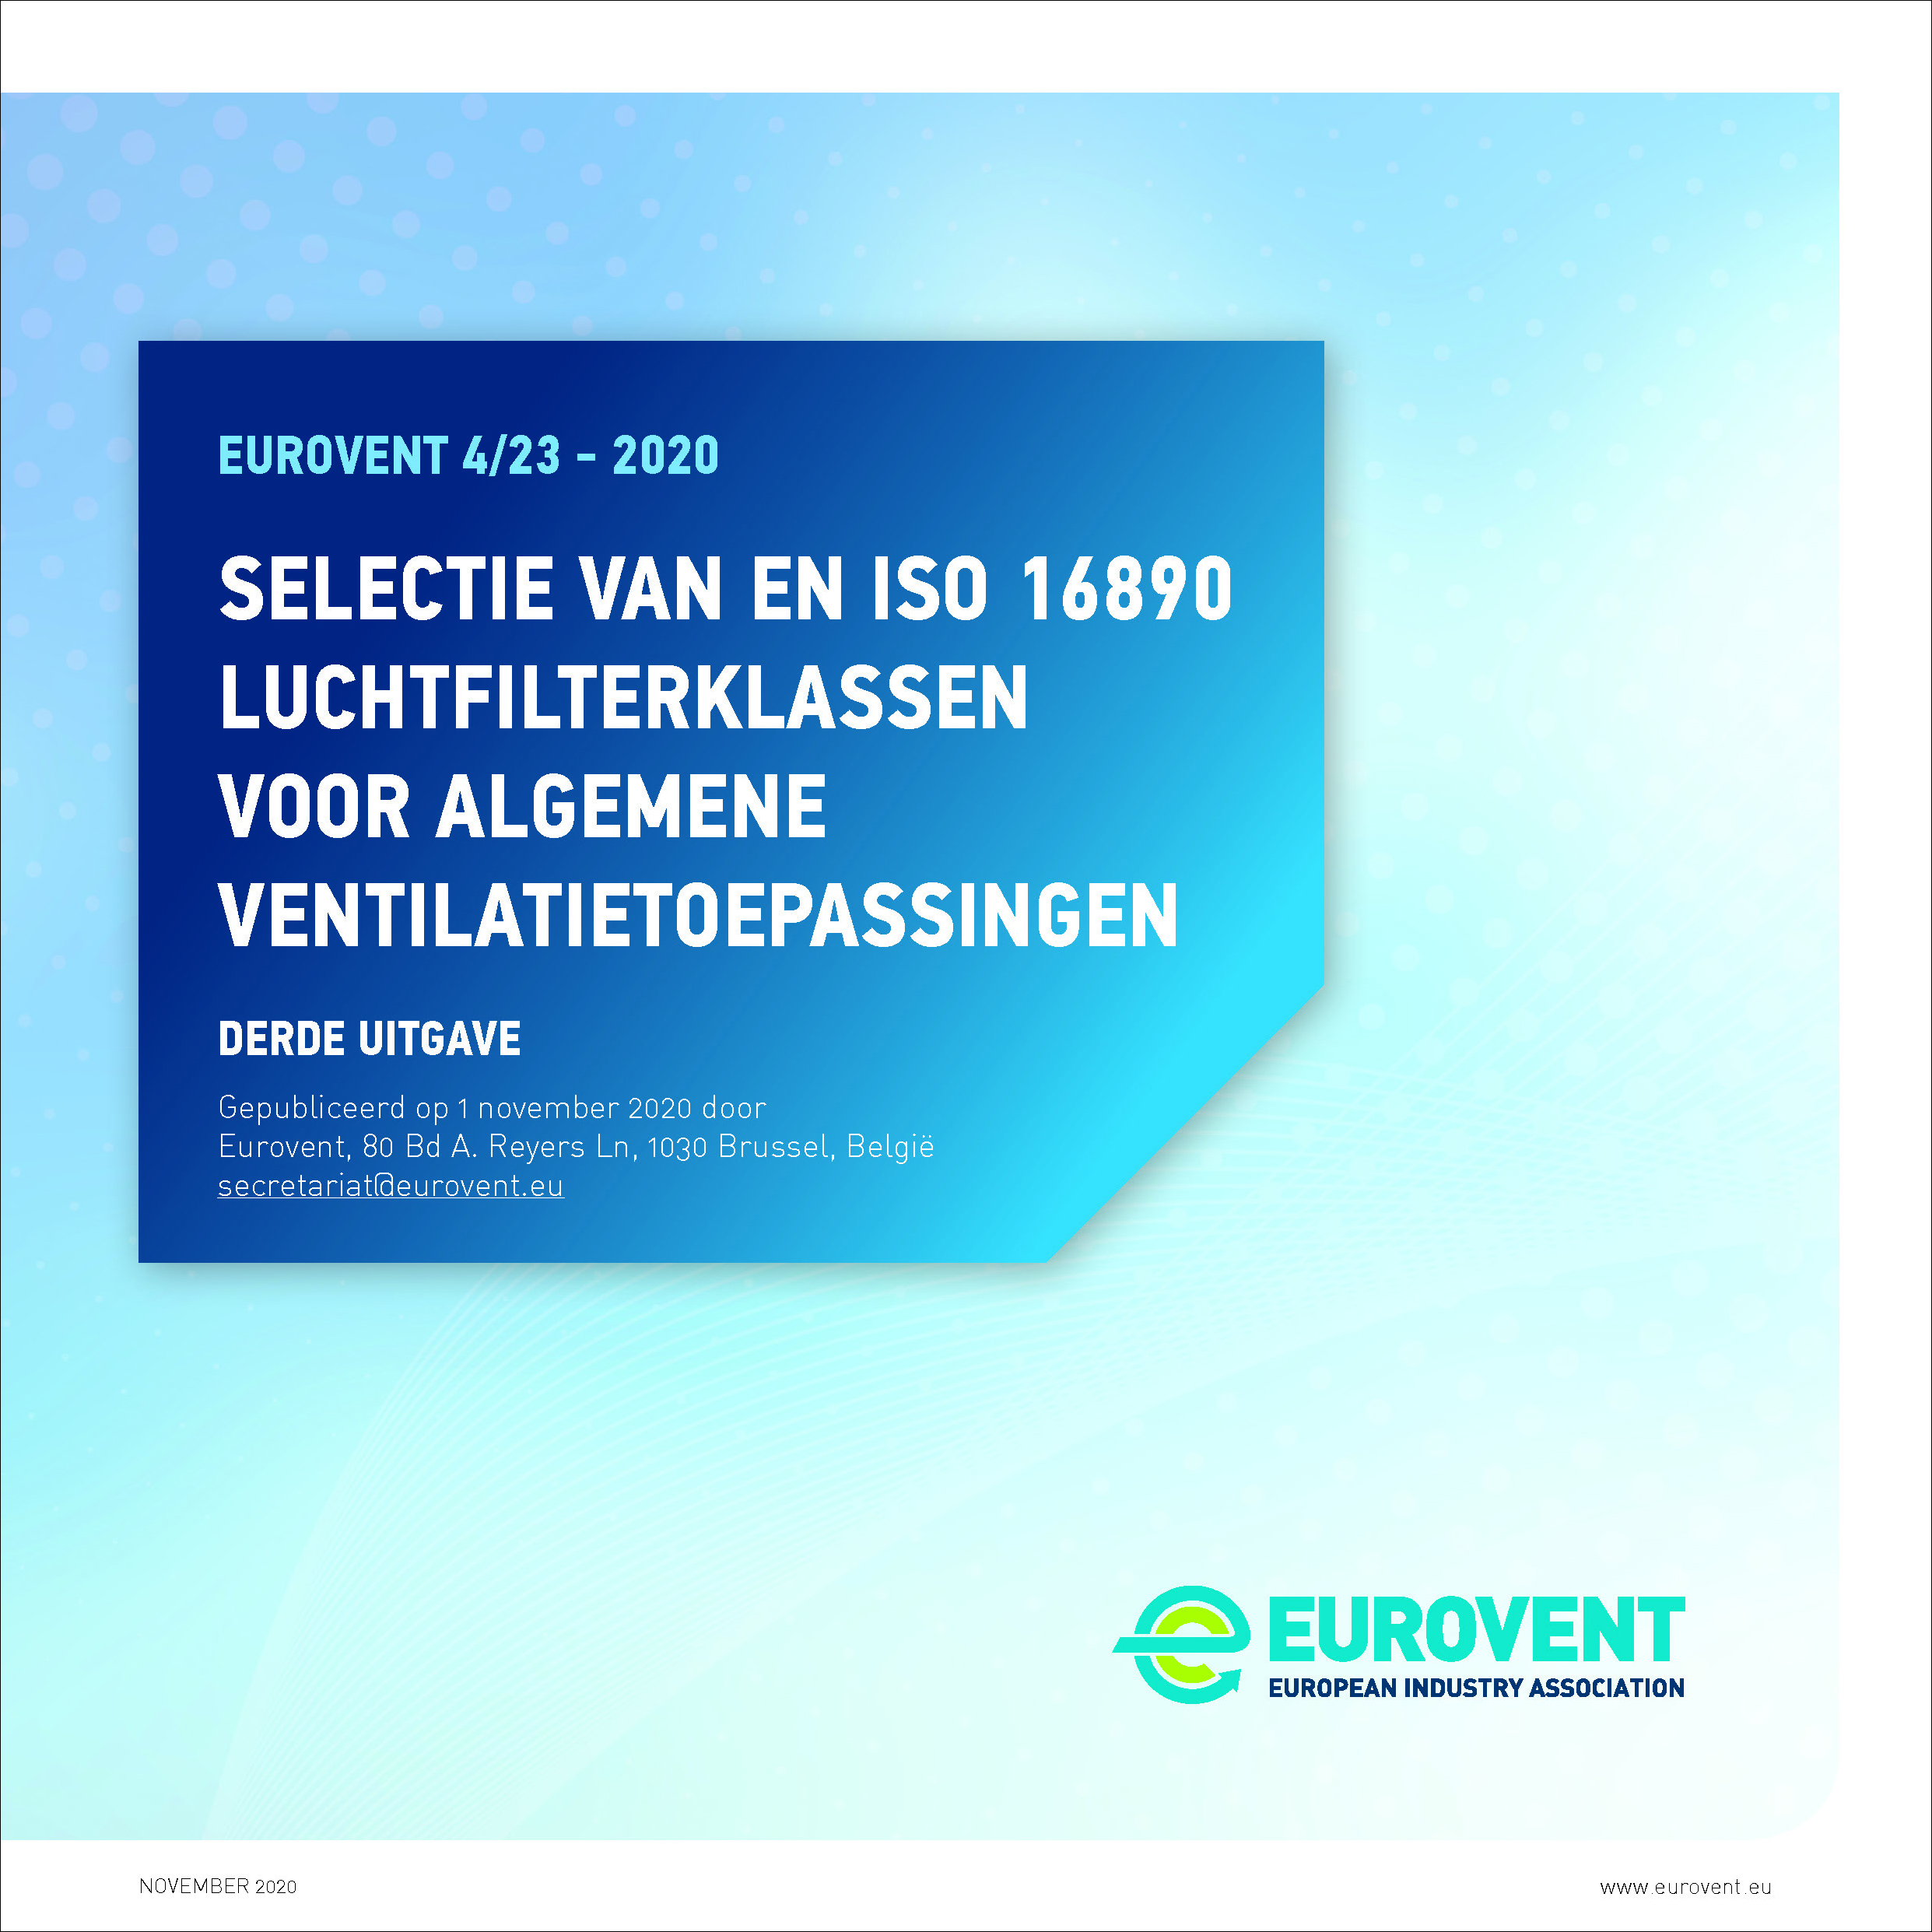 Eurovent 4/23 - 2020: Selectie van en ISO 16890 luchtfilterklassen voor algemene ventilatietoepassingen - Derde uitgave